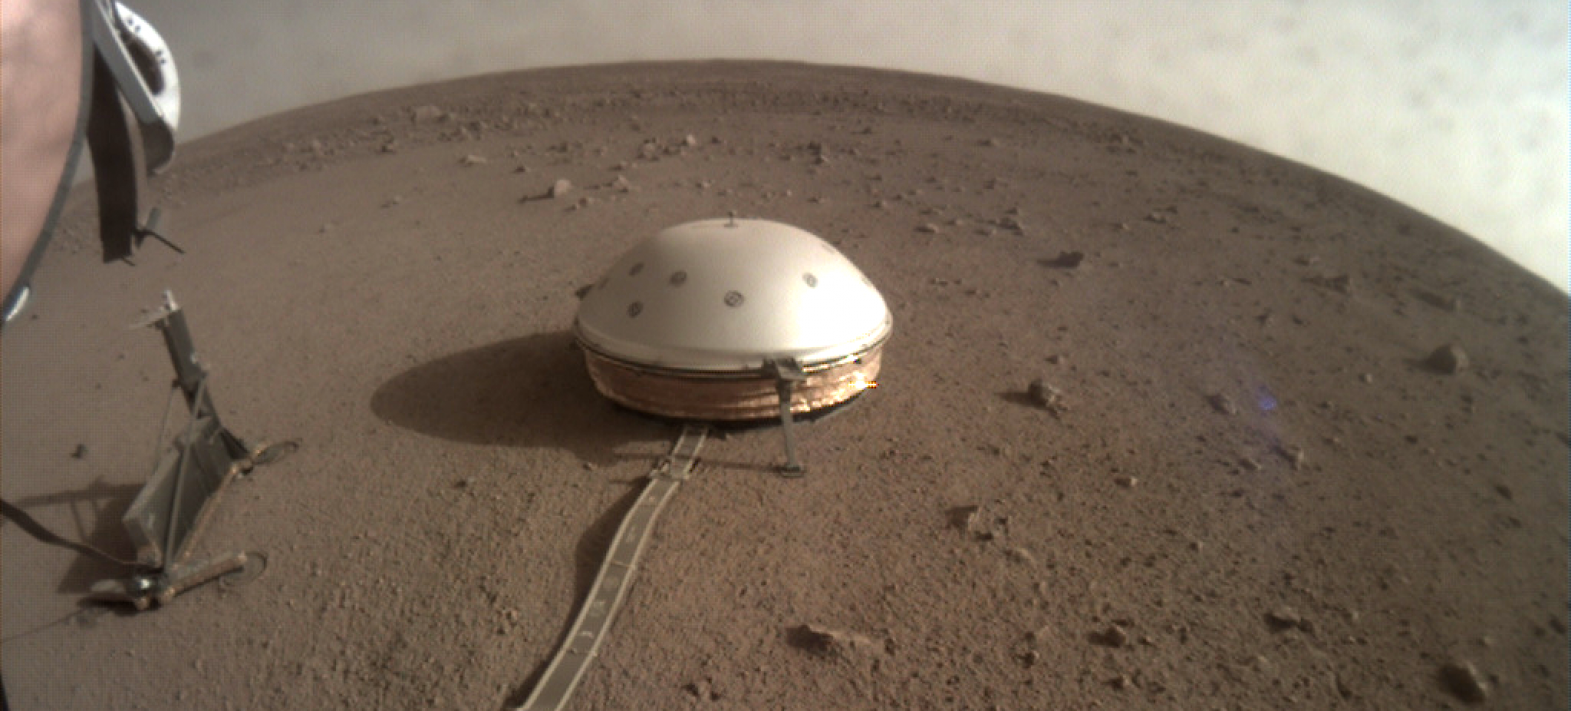 Le sismomètre SEIS de la mission InSight détecte un premier tremblement de Mars !